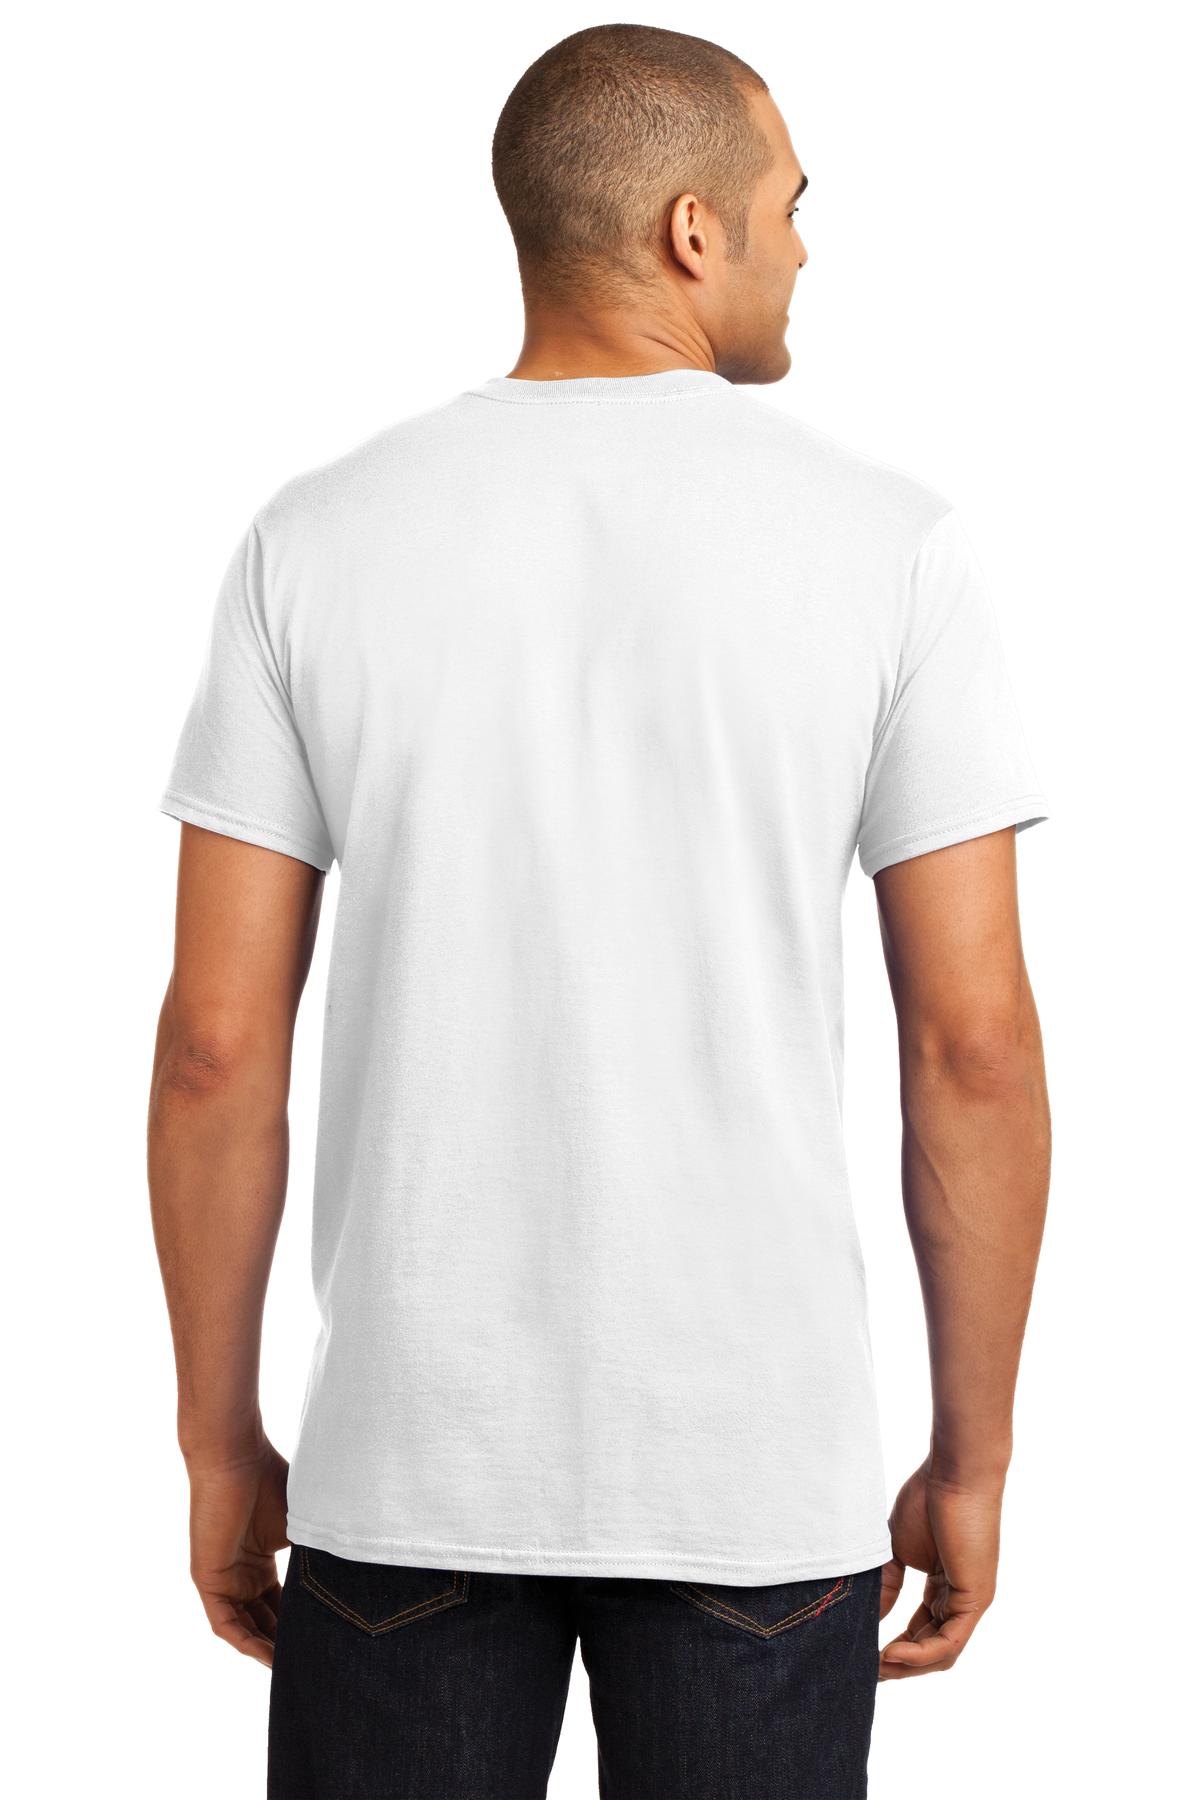 Hanes ® X-Temp ® T-Shirt. 4200 - Custom Shirt Shop